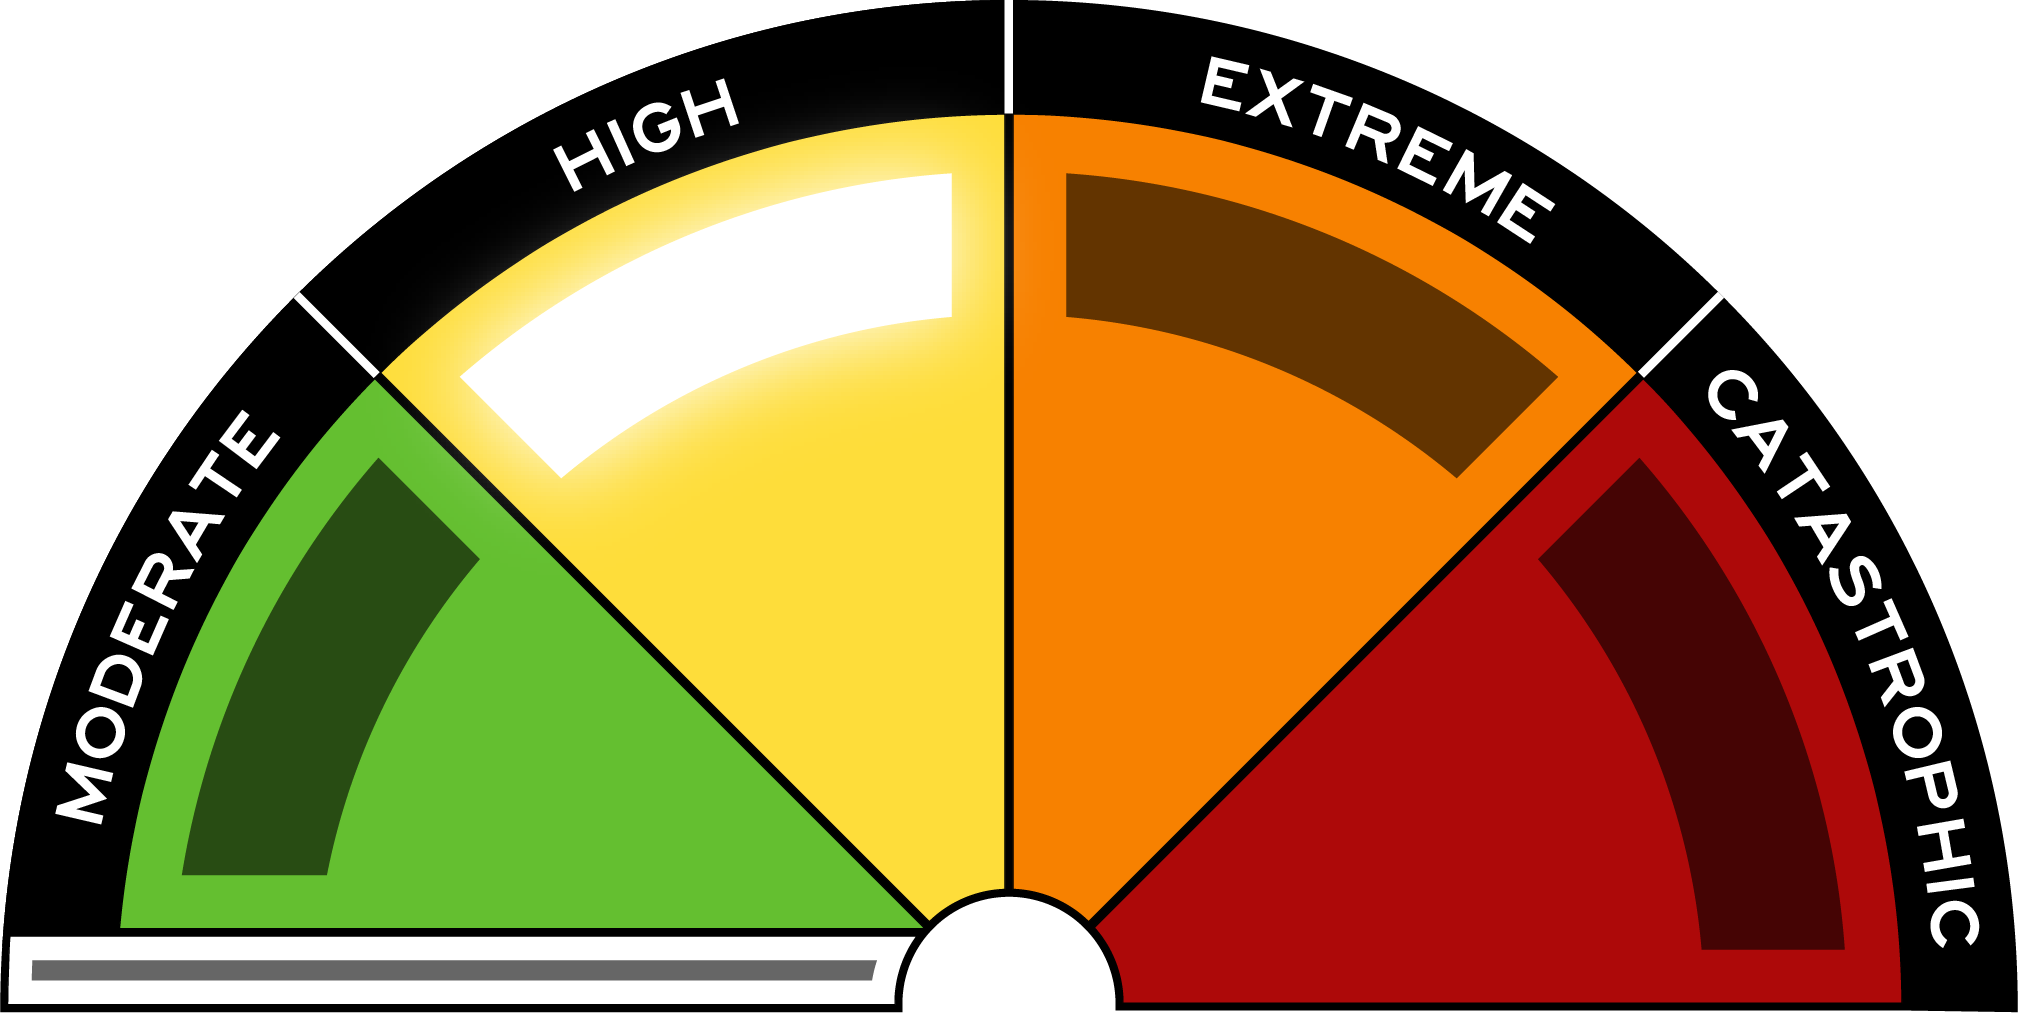 Australian Fire Danger Rating System sign